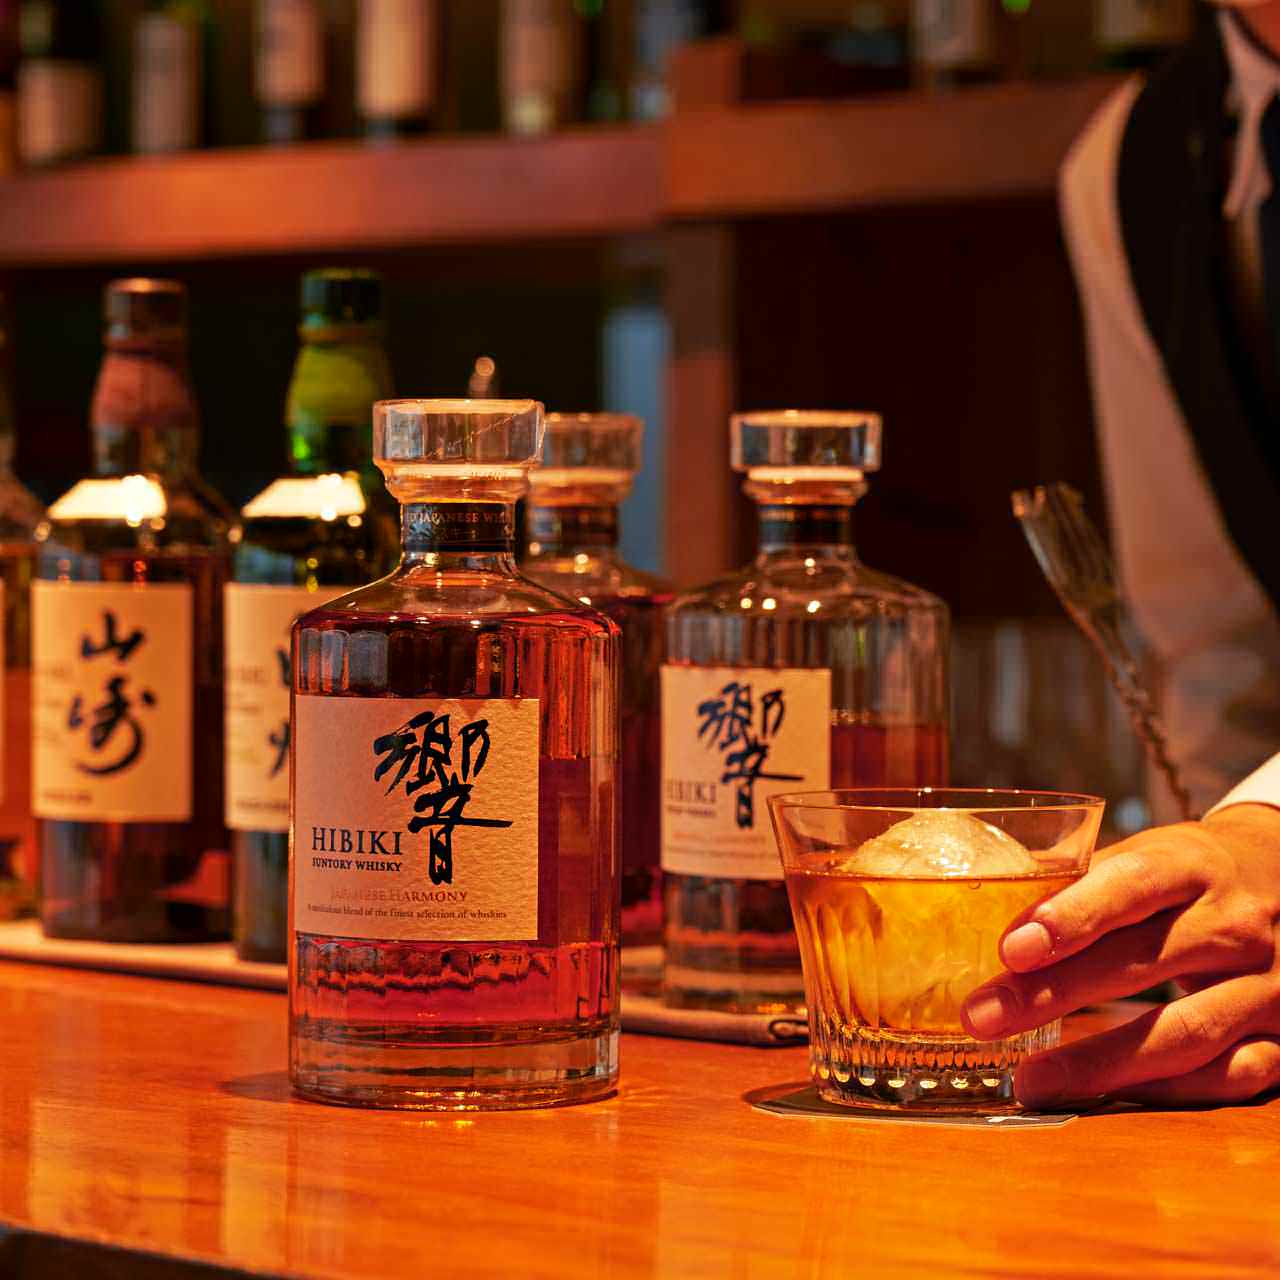 提供國內優質威士忌和時令日本料理的款待